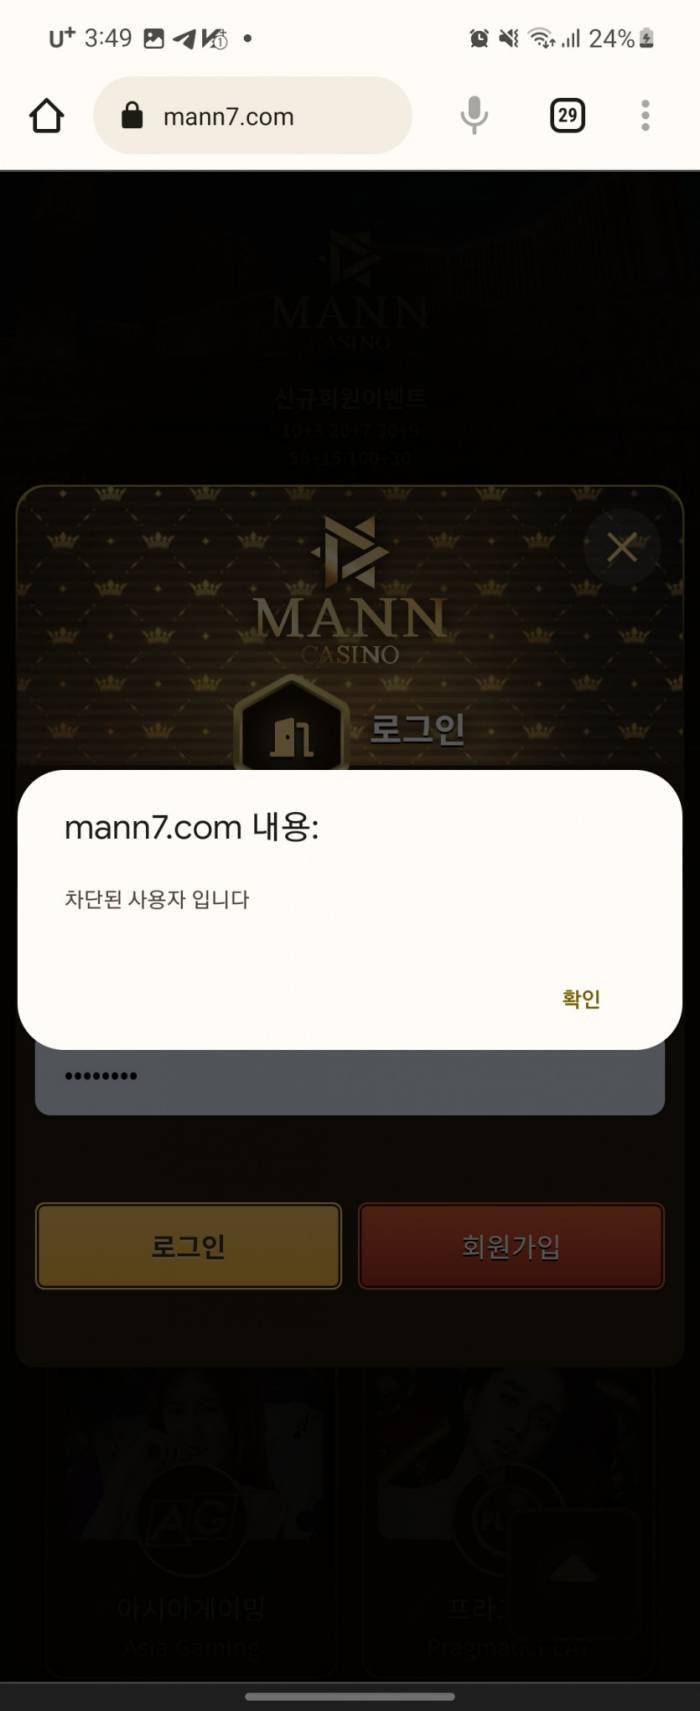 만카지노 mann7.com 무리한 롤링요구 잃을때까지 기다렸지만 먹튀로 해결